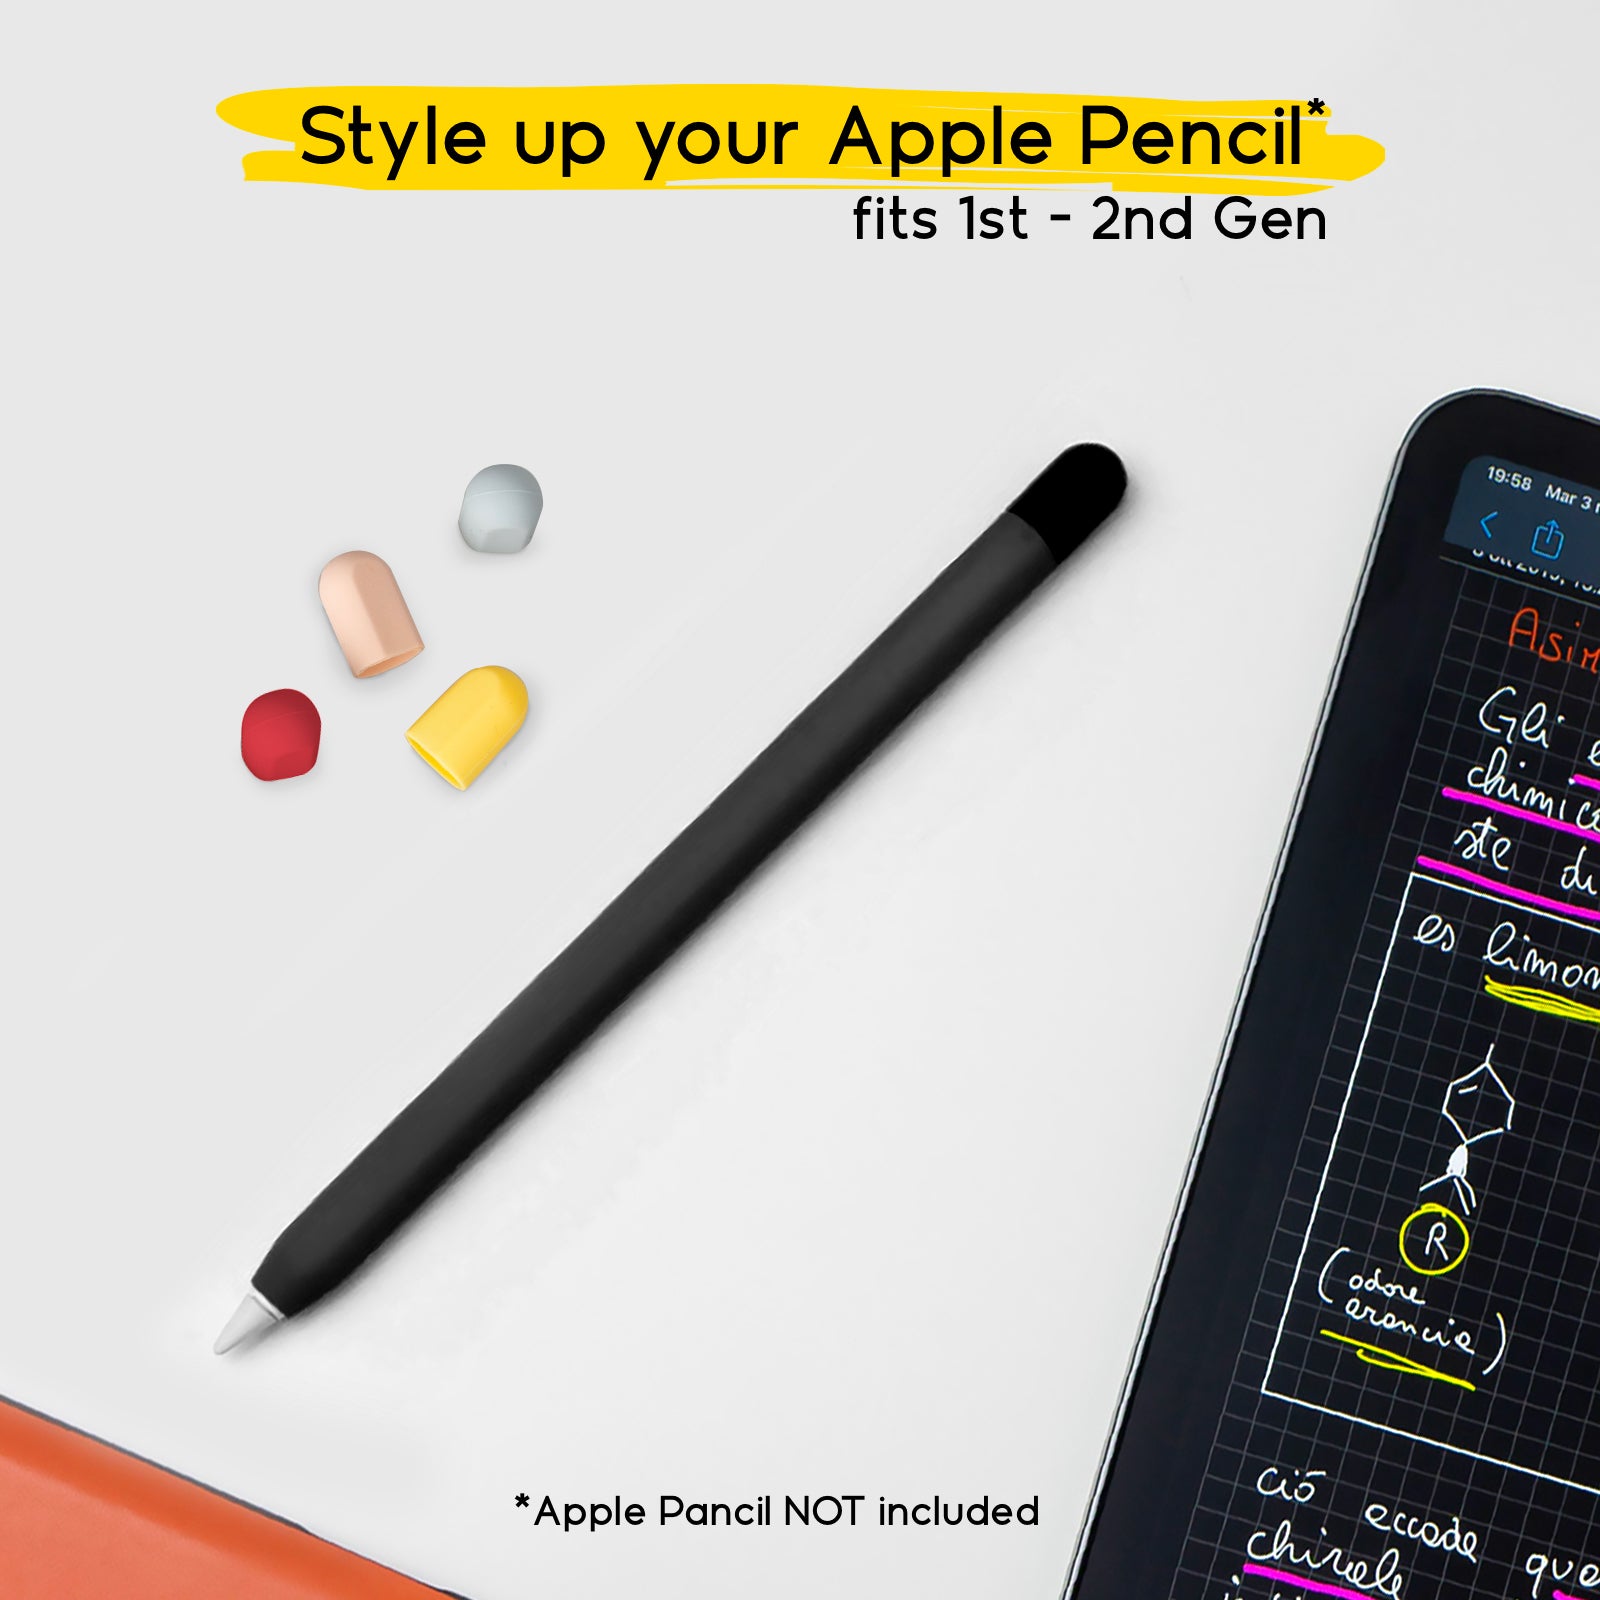 Funda piel negra para Apple Pencil 1ª y 2ª generación con 5 capuchones de colores
